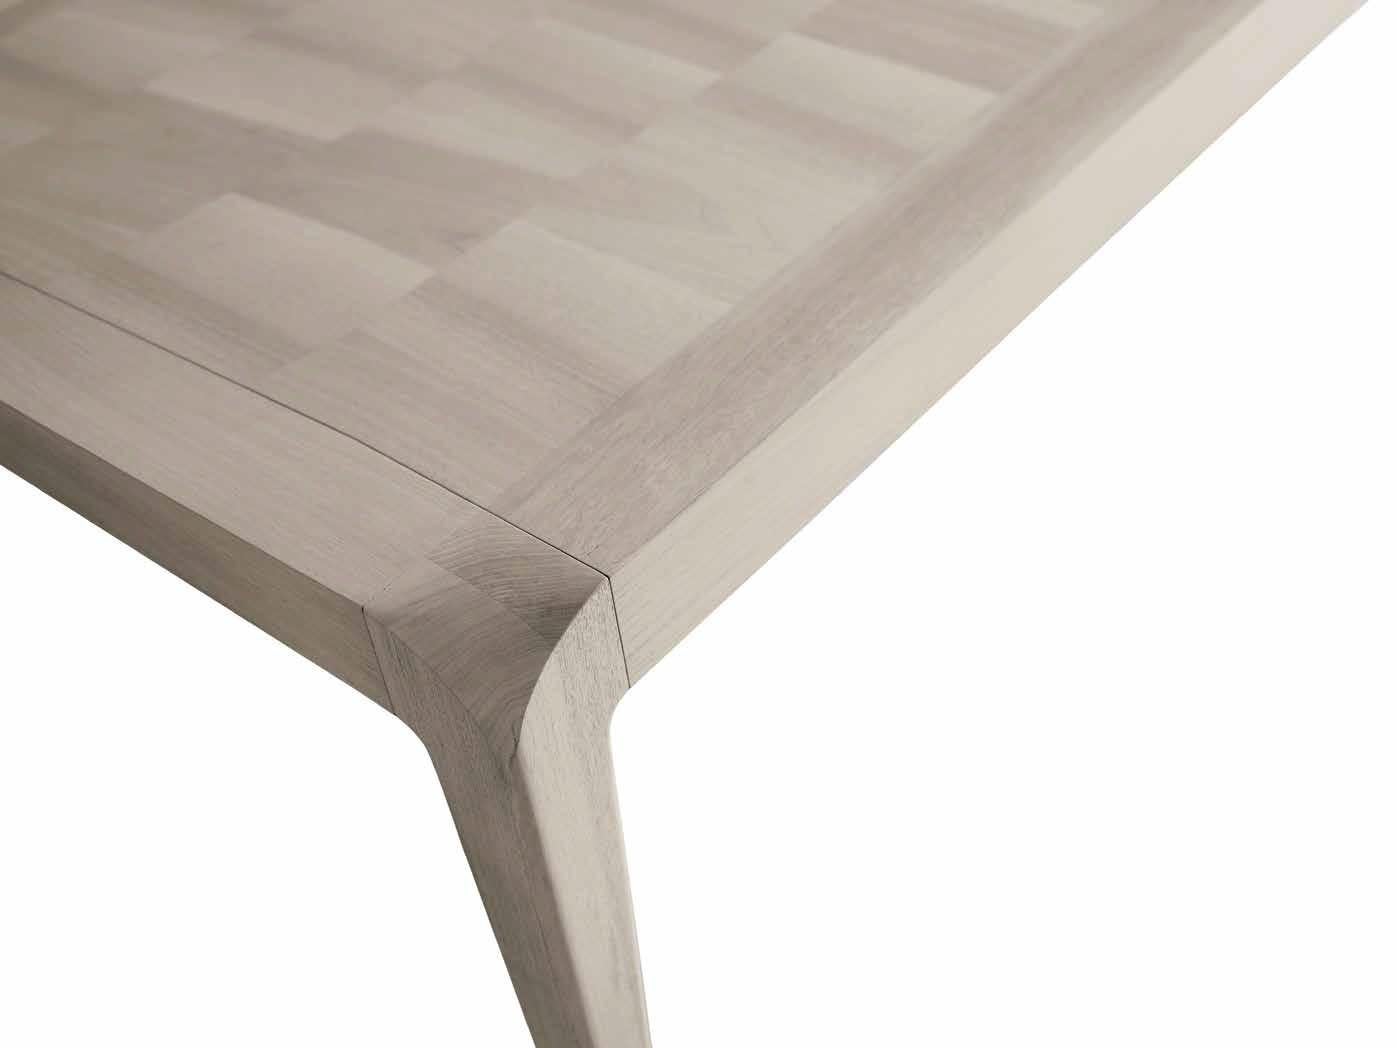 Der ausziehbare Tisch Sentiero aus Massivholz ist der Ausdruck von zeitgenössischem Design und hochwertiger italienischer Handwerkskunst. Er hat eine rechteckige Form und verfügt über eine Struktur und Beine in edlem Grau oder natürlichem Nussbaum